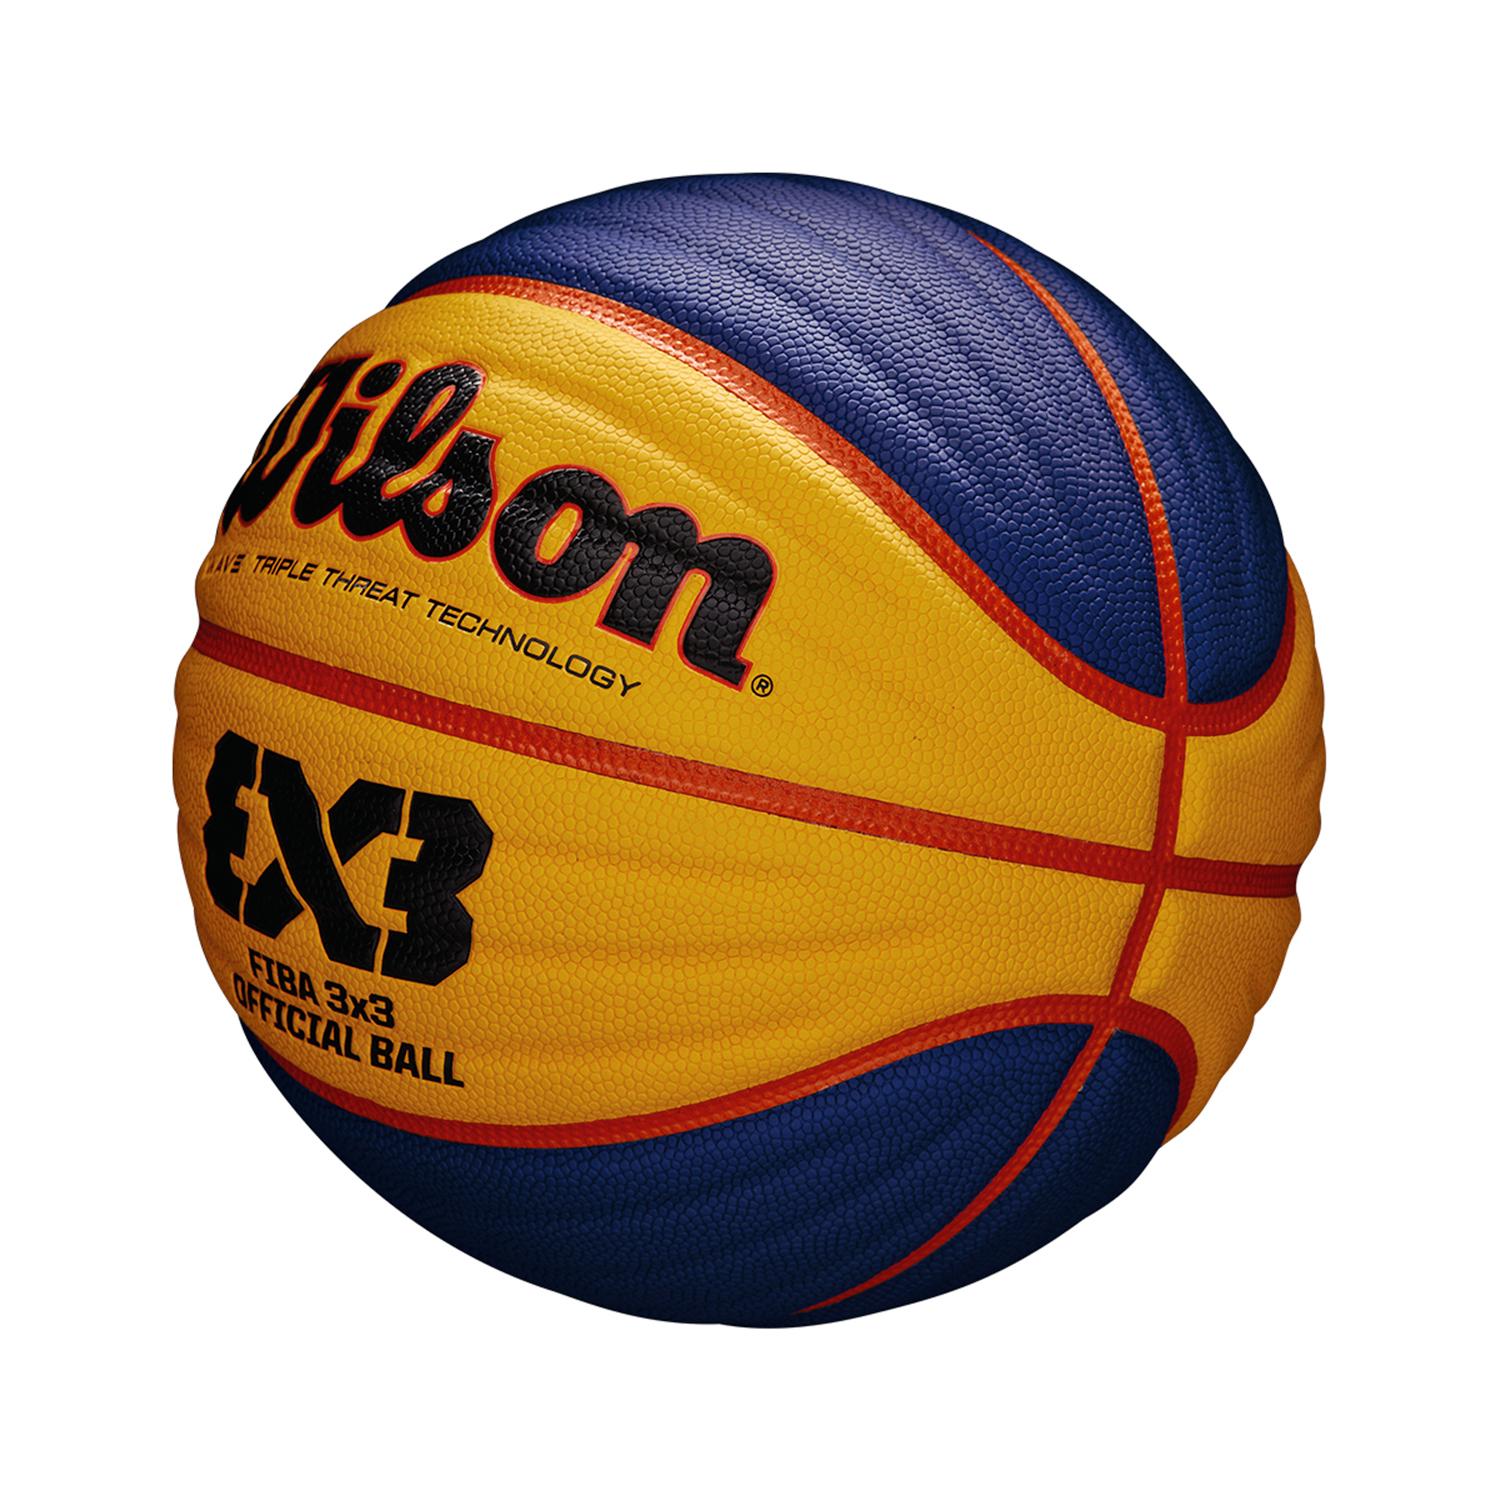 Balón Fiba 3x3 Game Official